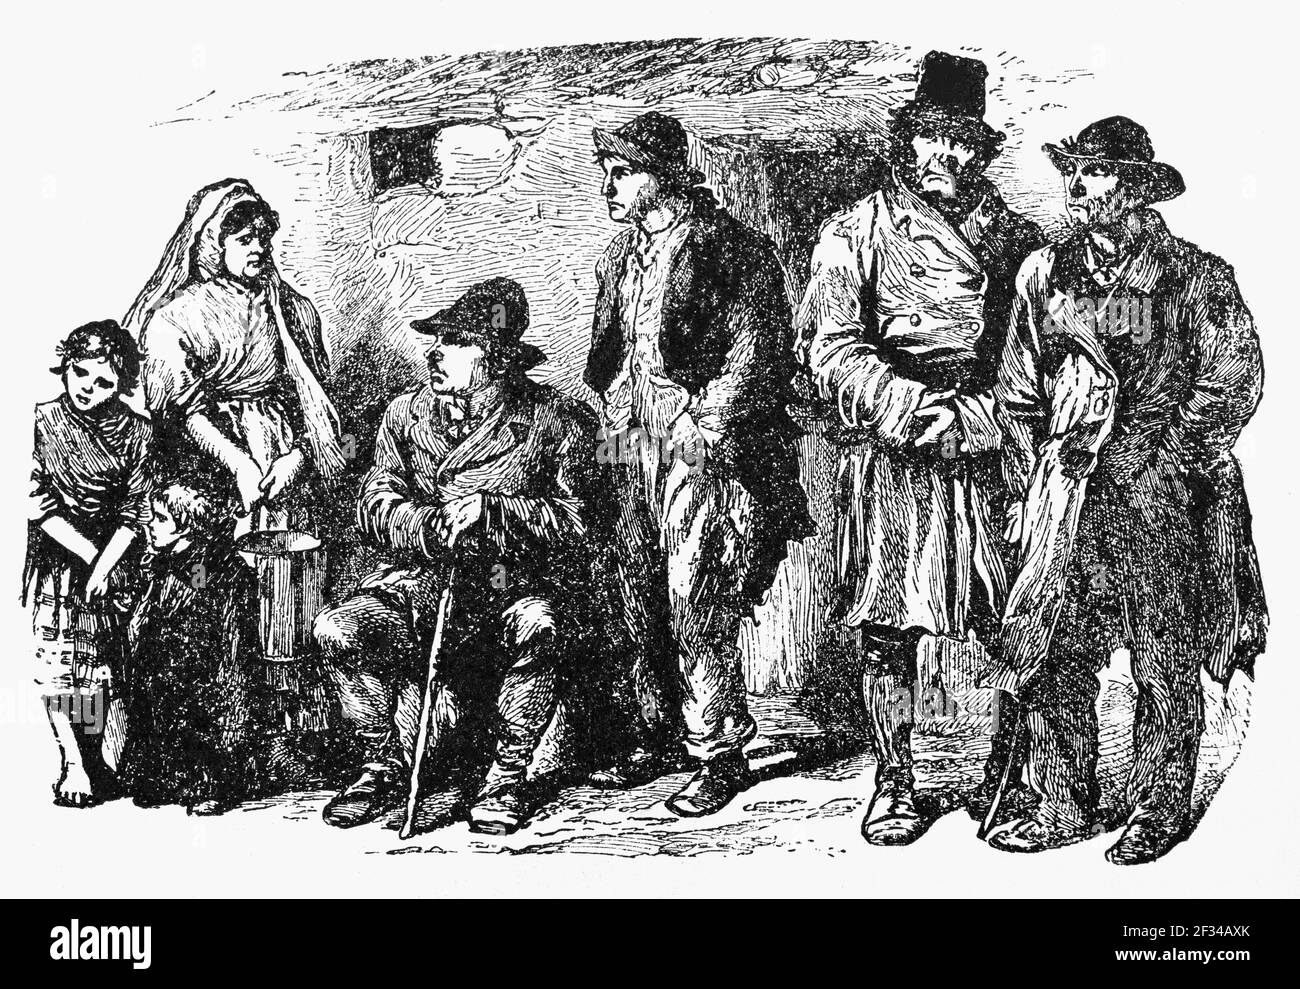 Un gruppo di Moonlighters nel 19 ° secolo Connemara, Contea di Galway, Irlanda. In seguito alla grande carestia e allo sfracimento delle famiglie irlandesi da parte dei proprietari terrieri assenti, i Moonlighters, un'organizzazione segreta fu fondata nel 1879 per liberare l'Irlanda dal dominio inglese. Foto Stock